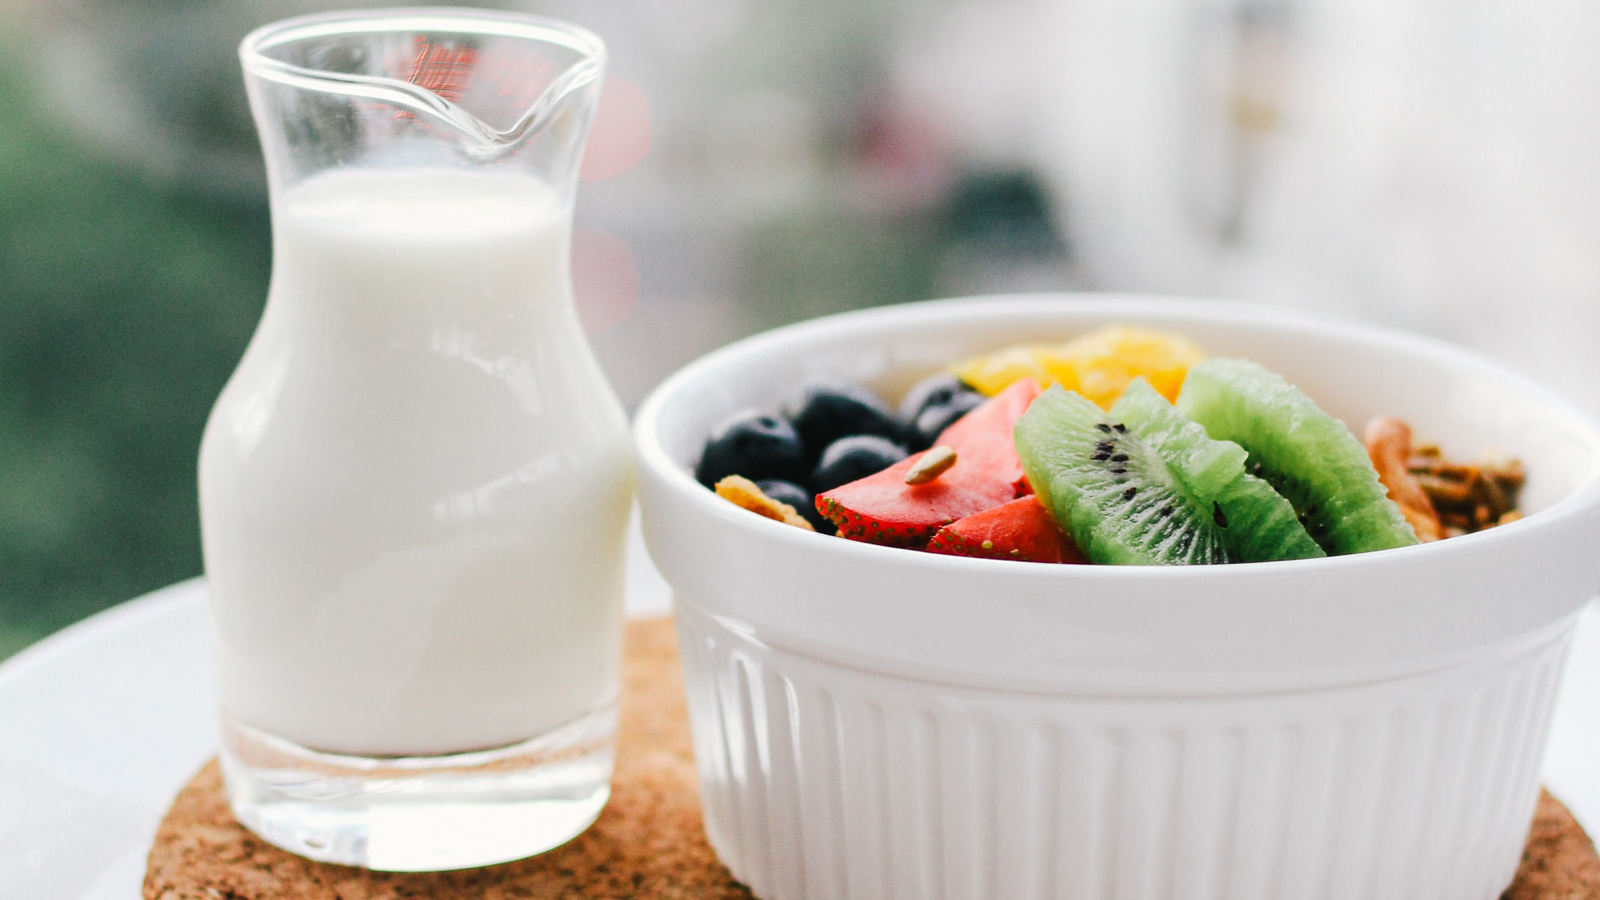 Một nghiên cứu tại Đại học Purdue, Ấn Độ chỉ ra rằng uống một ly sữa mỗi ngày có thể giúp phụ nữ ngăn tích mỡ và giảm mức mỡ trong cơ thể từ 7 -10kg. Như vậy, uống sữa giảm cân là có thật!